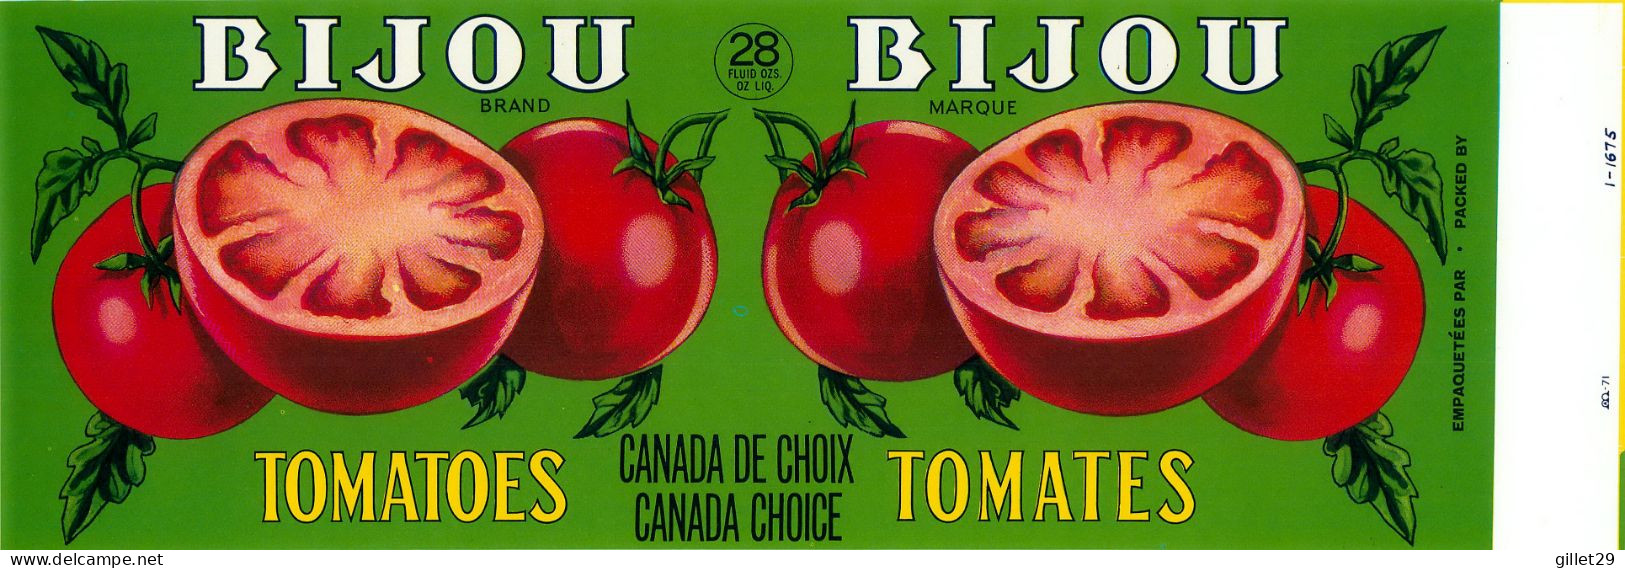 ÉTIQUETTES - BIJOU BRAND TOMATOES - BIJOU MARQUE TOMATES - - 28 OZS CANADA - DIMENSION 11 X 33 Cm - - Fruit En Groenten